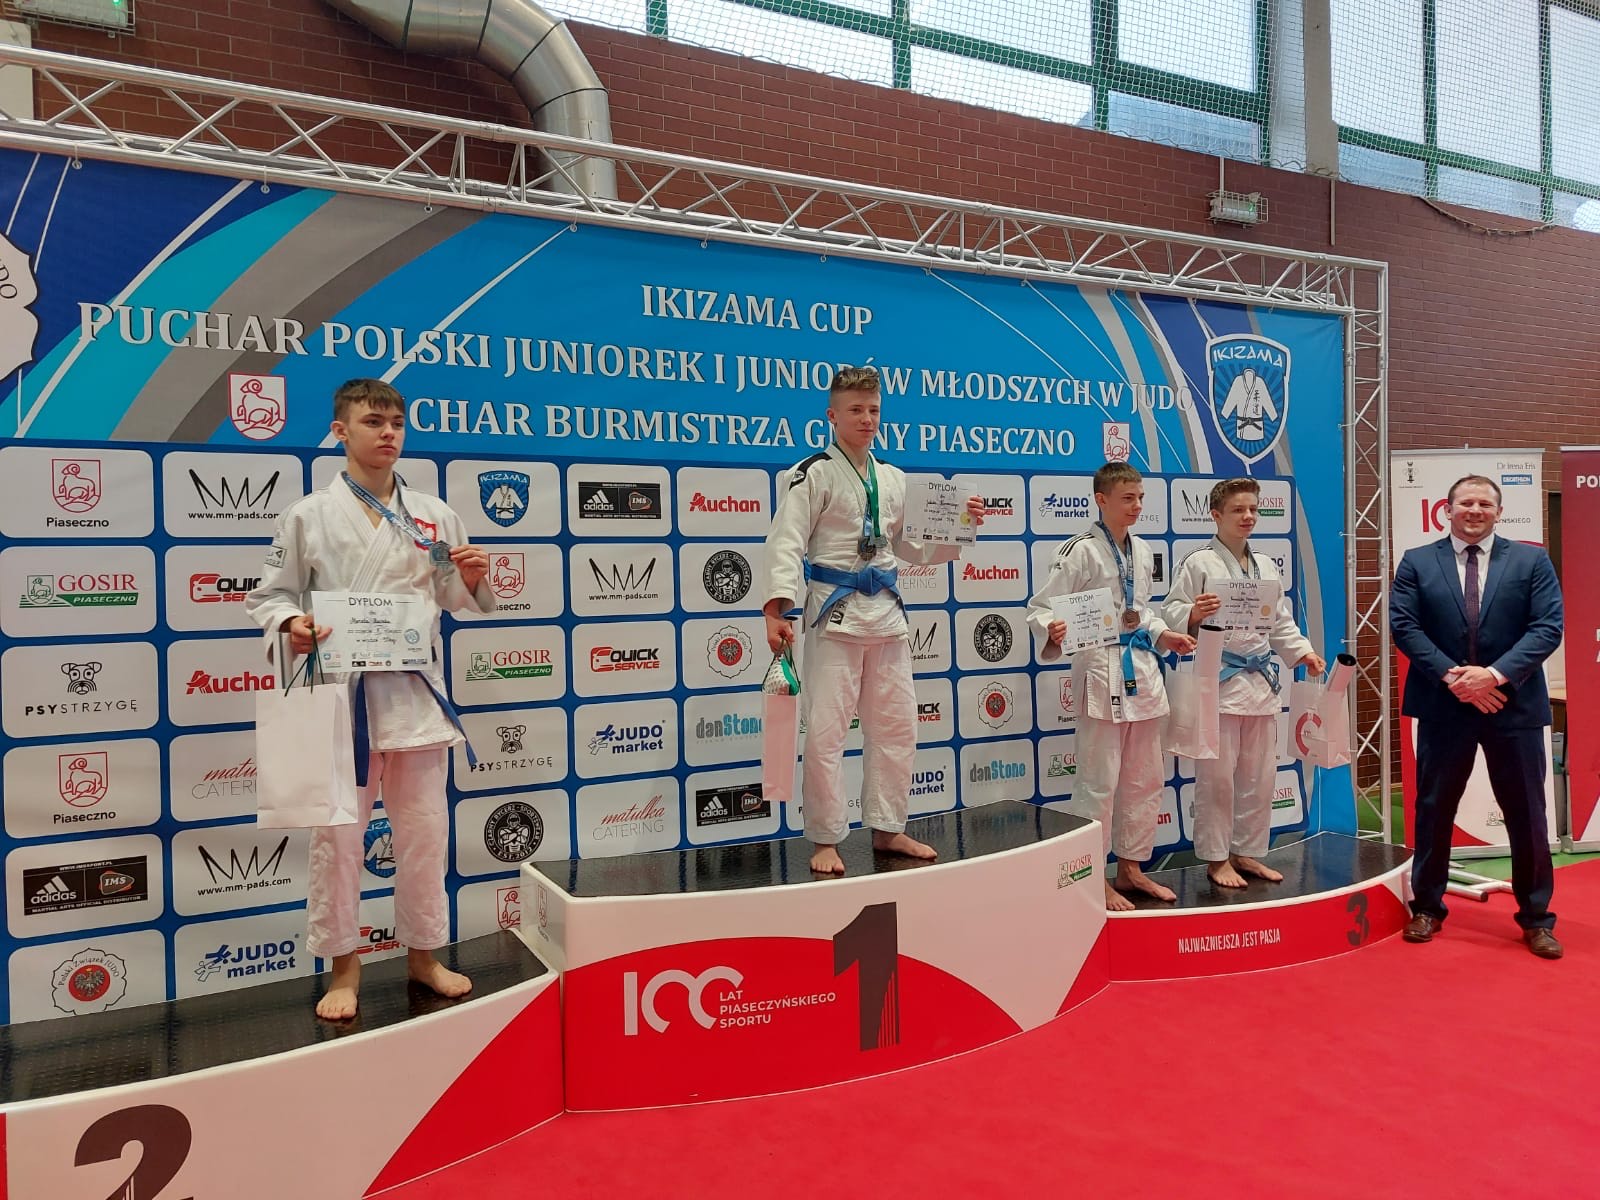 Podium na którym stoi czterech medalistów. Na miejscu nr 1 (drugi z lewej) - Jakub Kurowski.